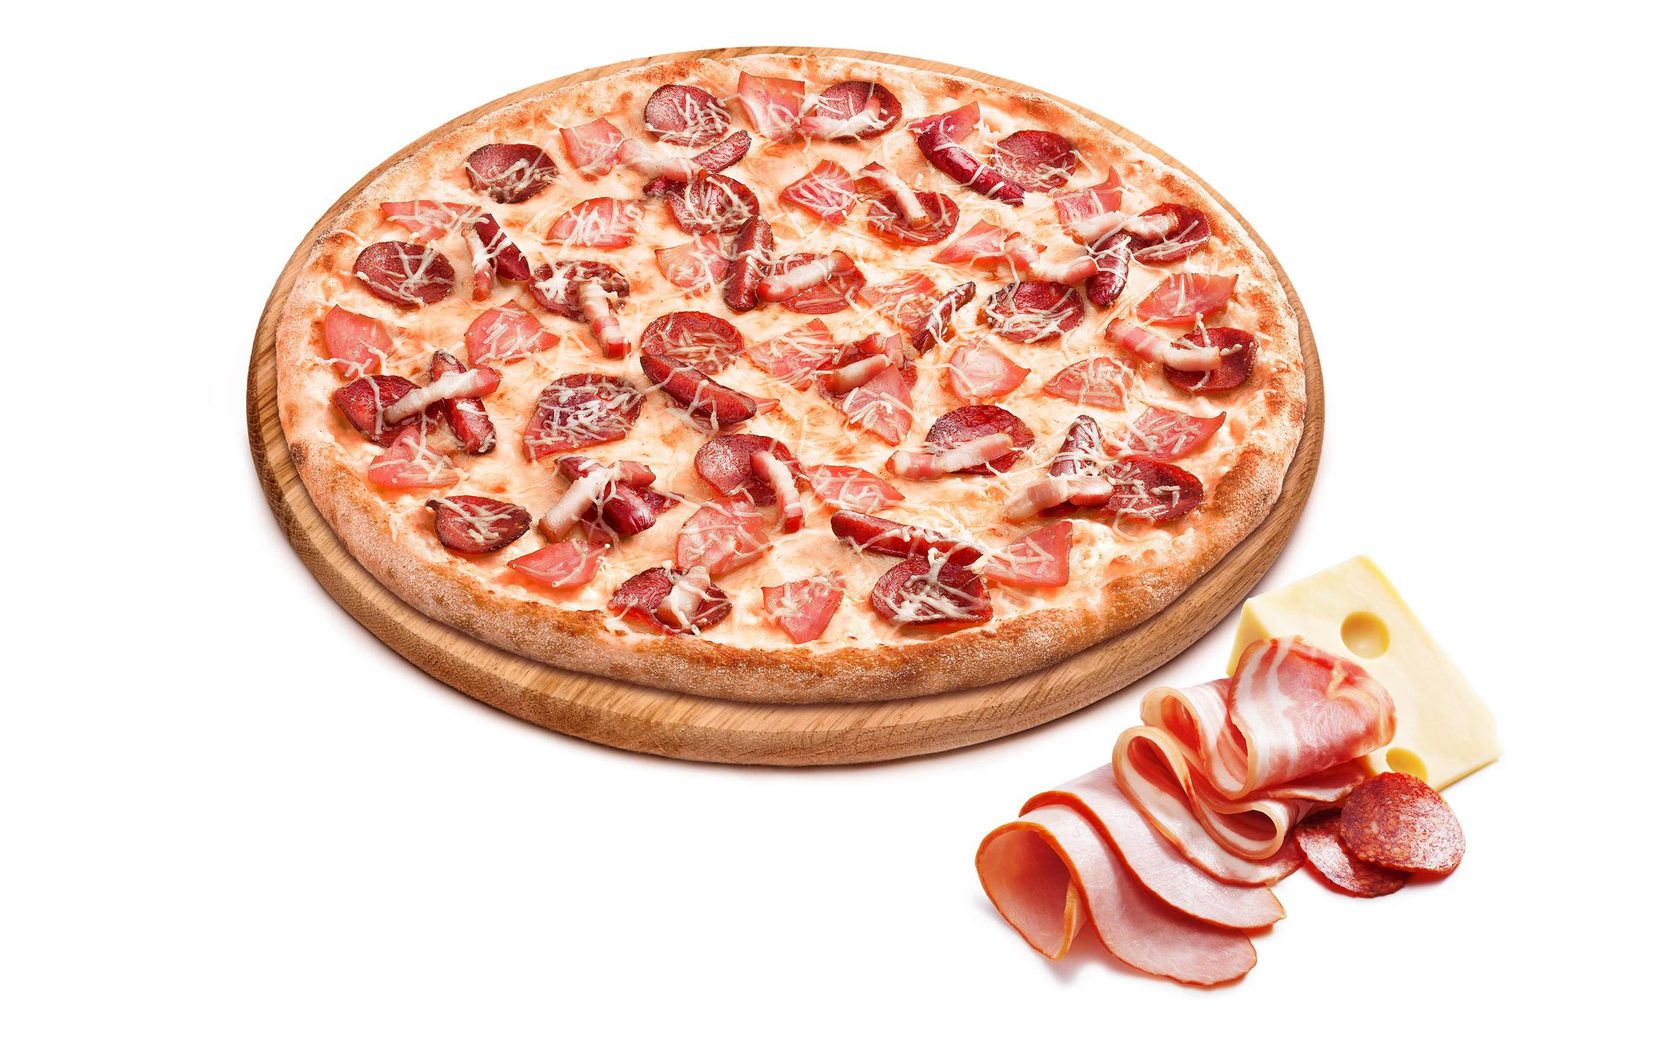 я хочу пиццу наполовину с беконом и сосисками и наполовину с пепперони и ветчиной фото 70